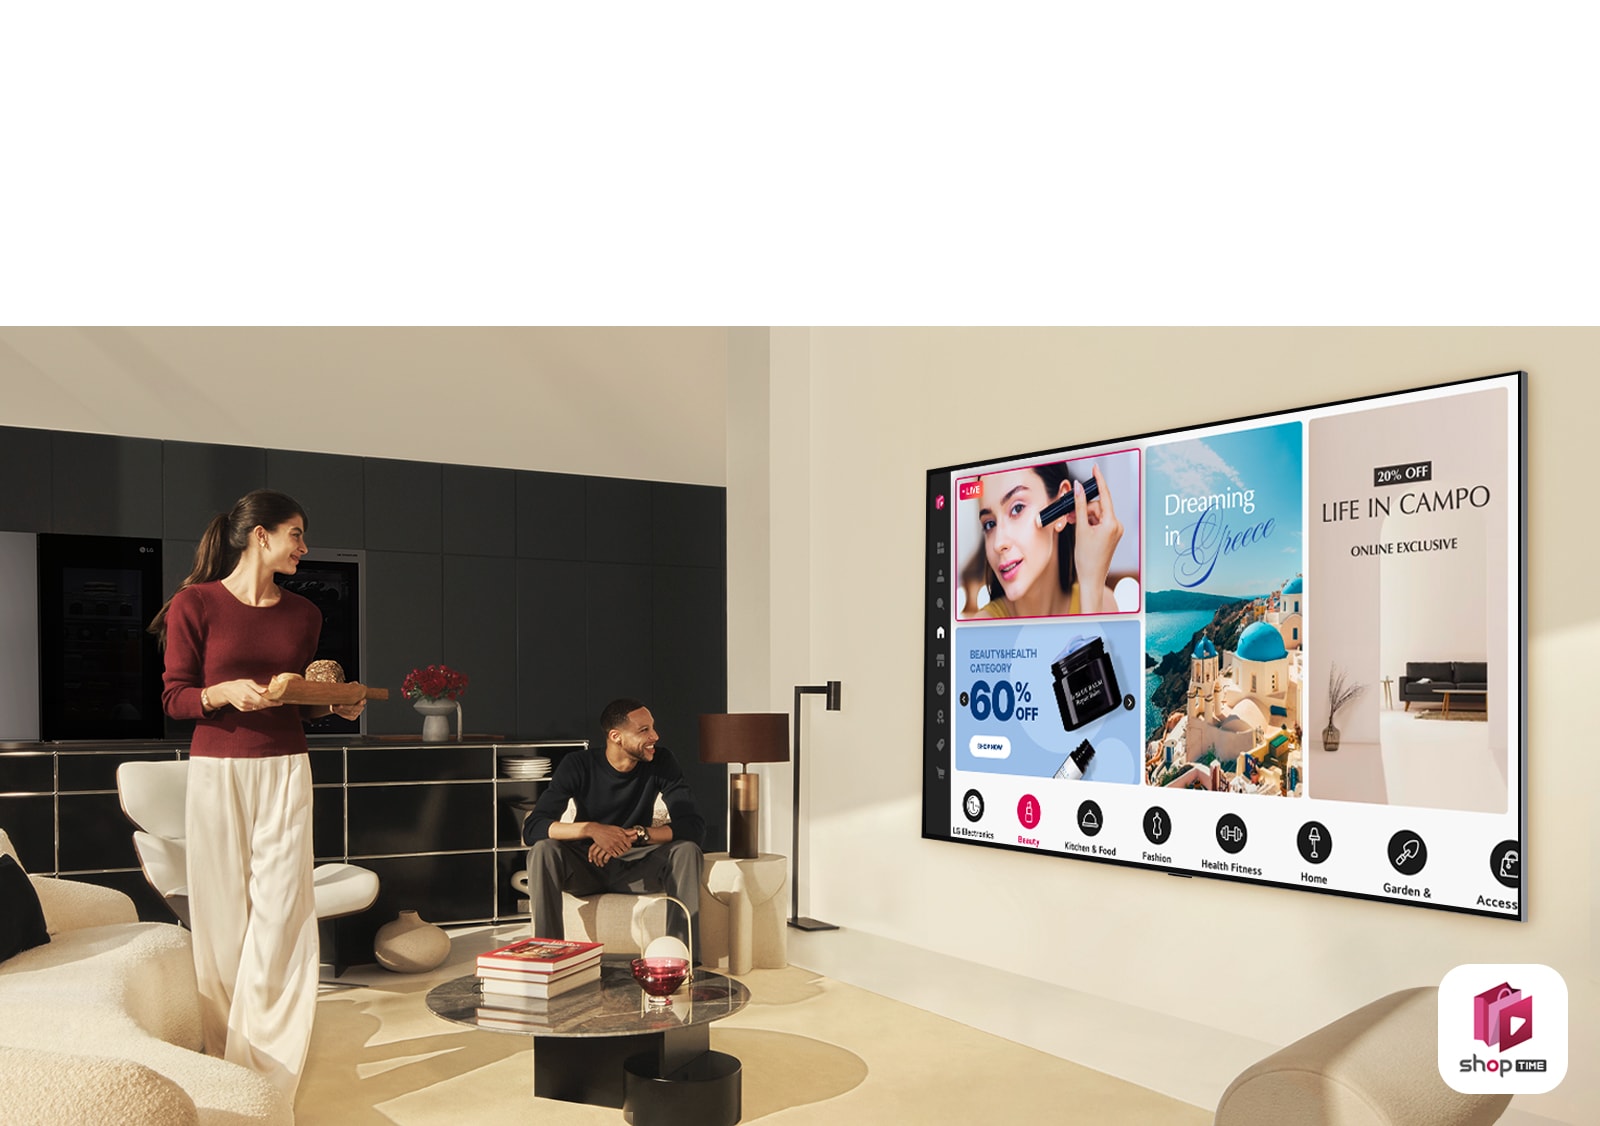 زوجان ينظران إلى قنوات التسوق عبر المنزل على LG TV كبير مثبت على الحائط في غرفة معيشة عصرية. 